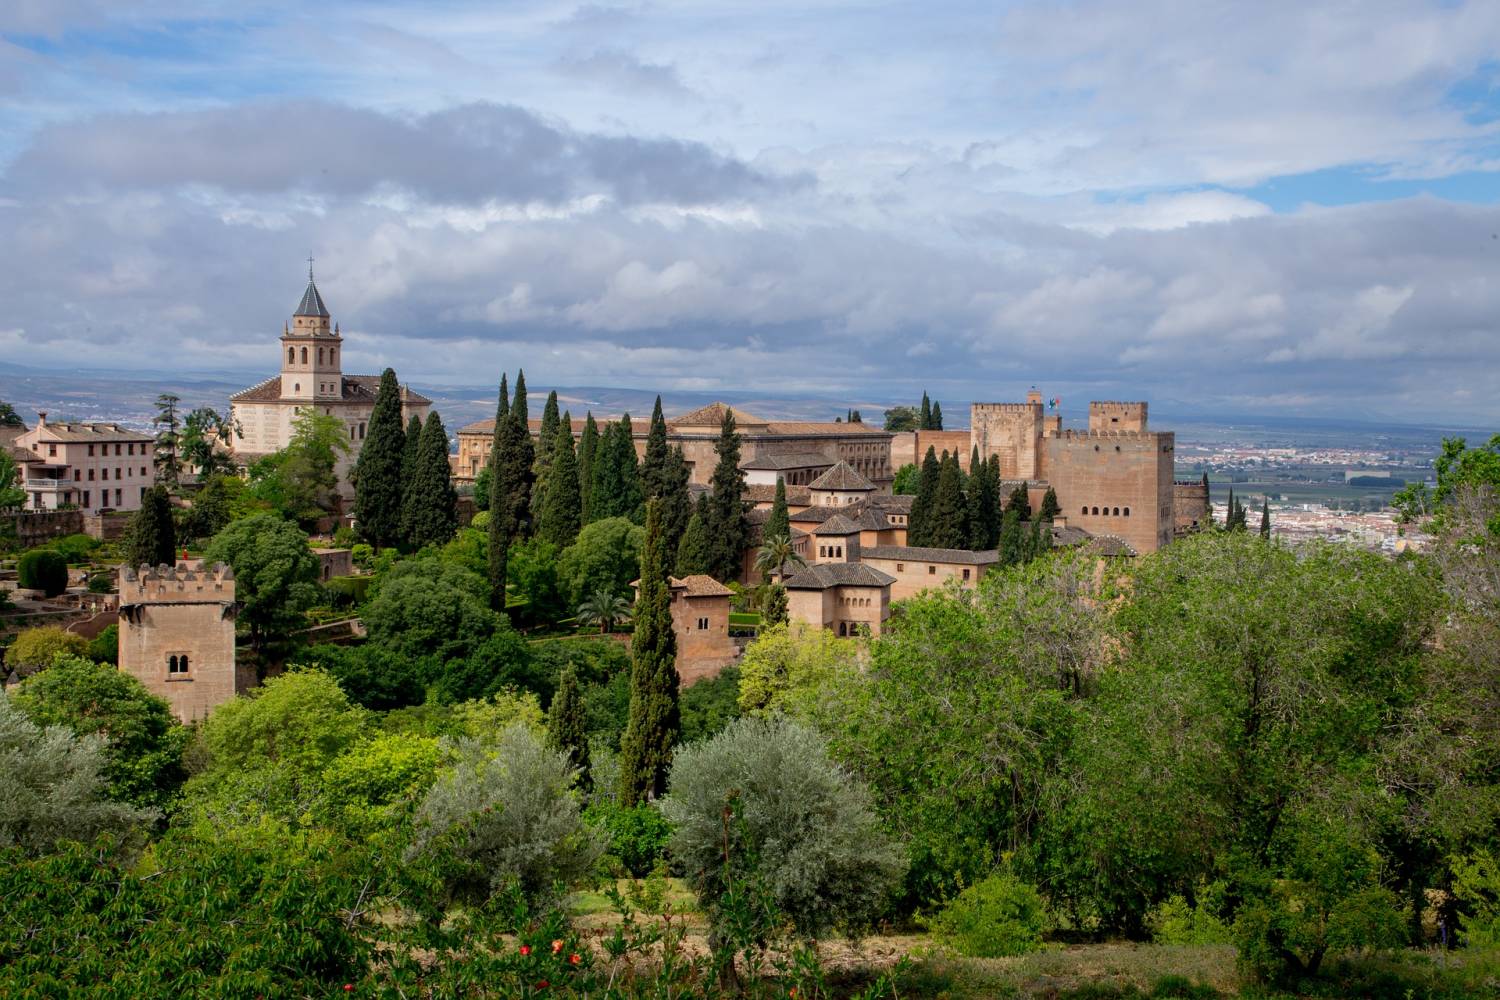 Visites guidées à L'Alhambra et le Généralife - Visites guidées et